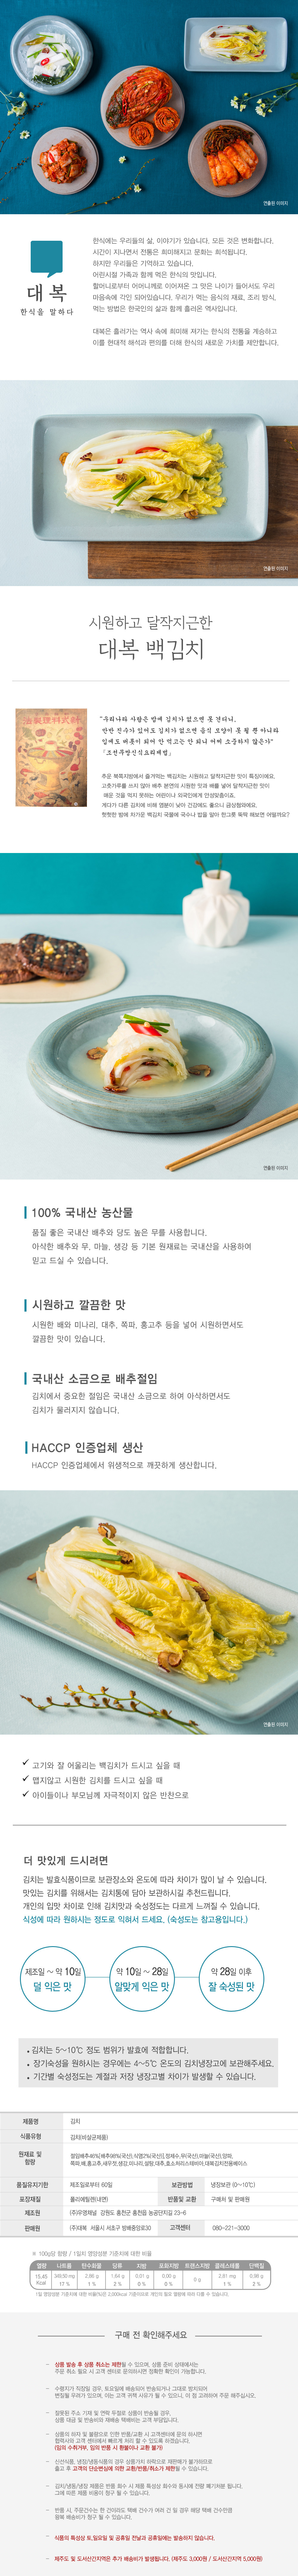 kimchi(b).jpg